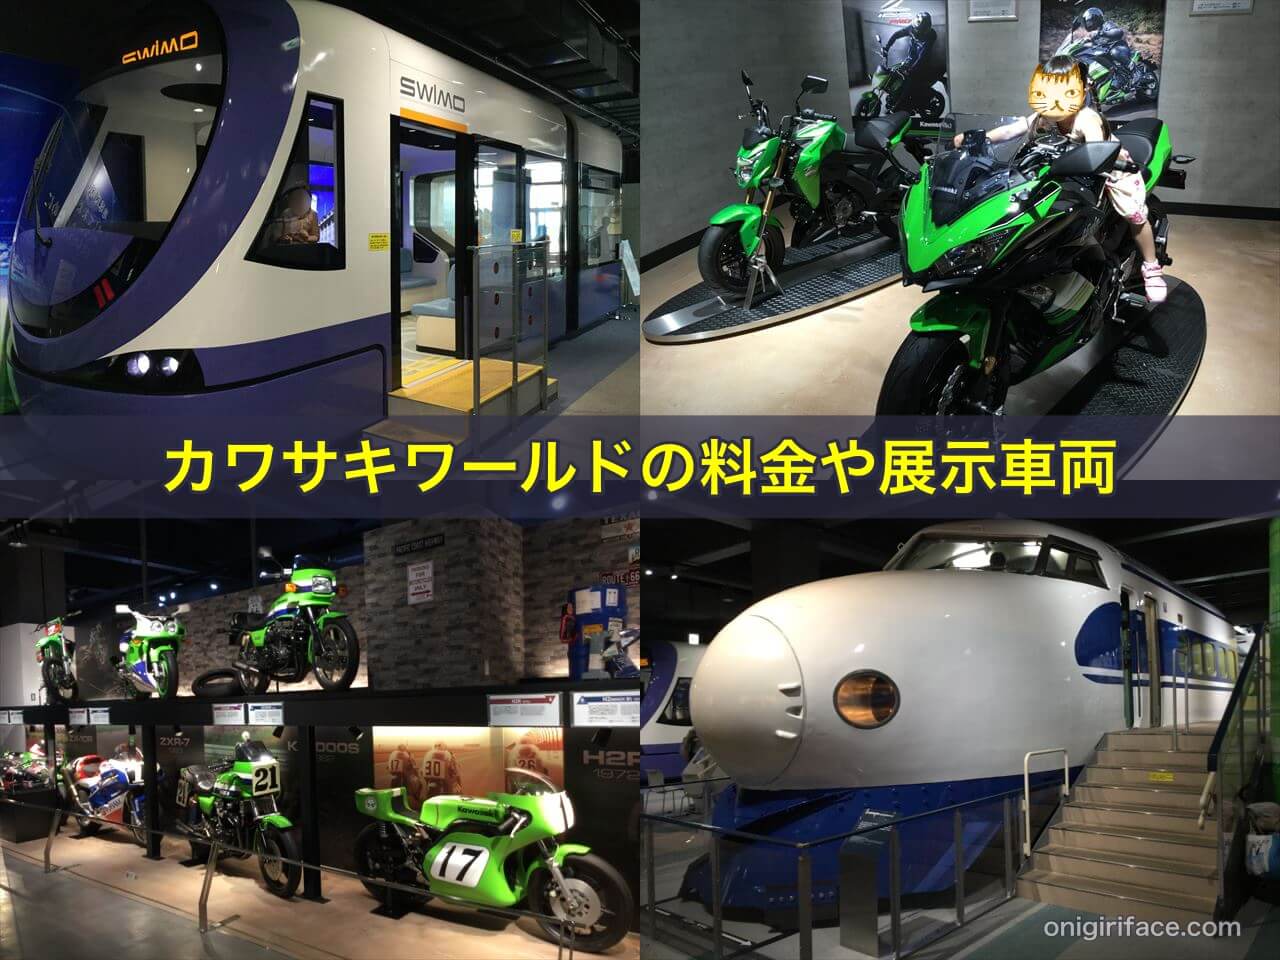 神戸カワサキワールドの料金、バイクなどの展示車両、感想